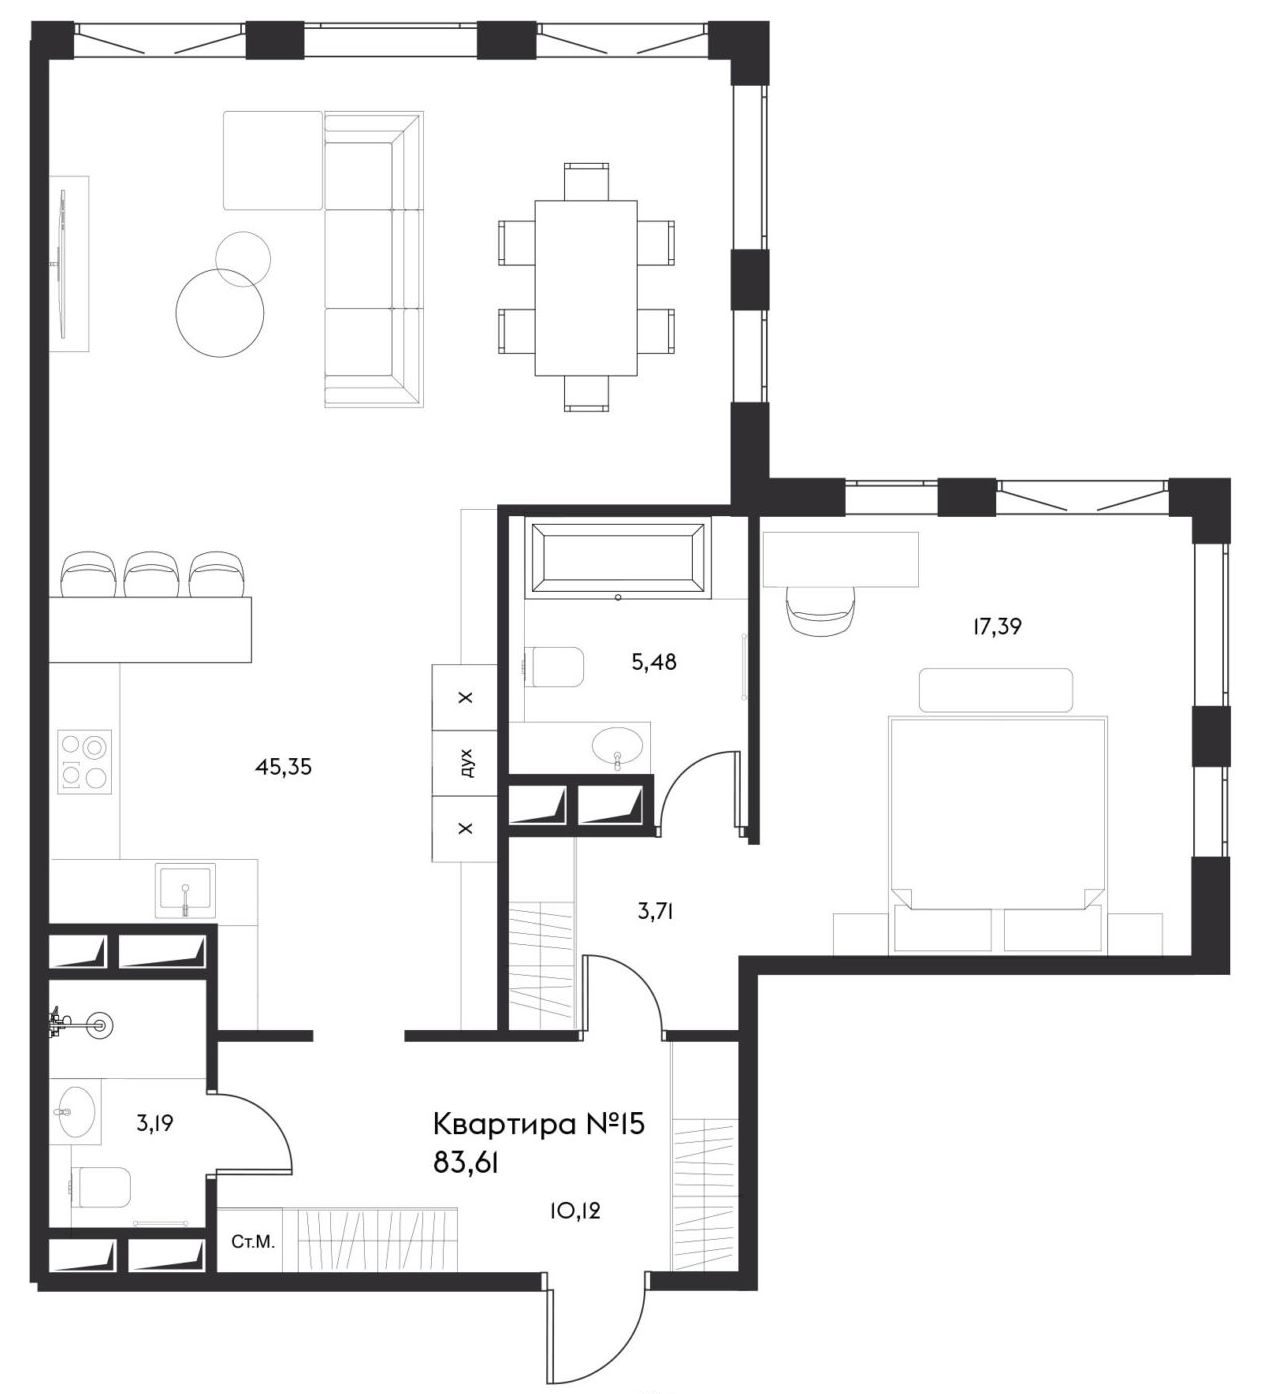 2Е-комнатная, 83.61 м²– 2